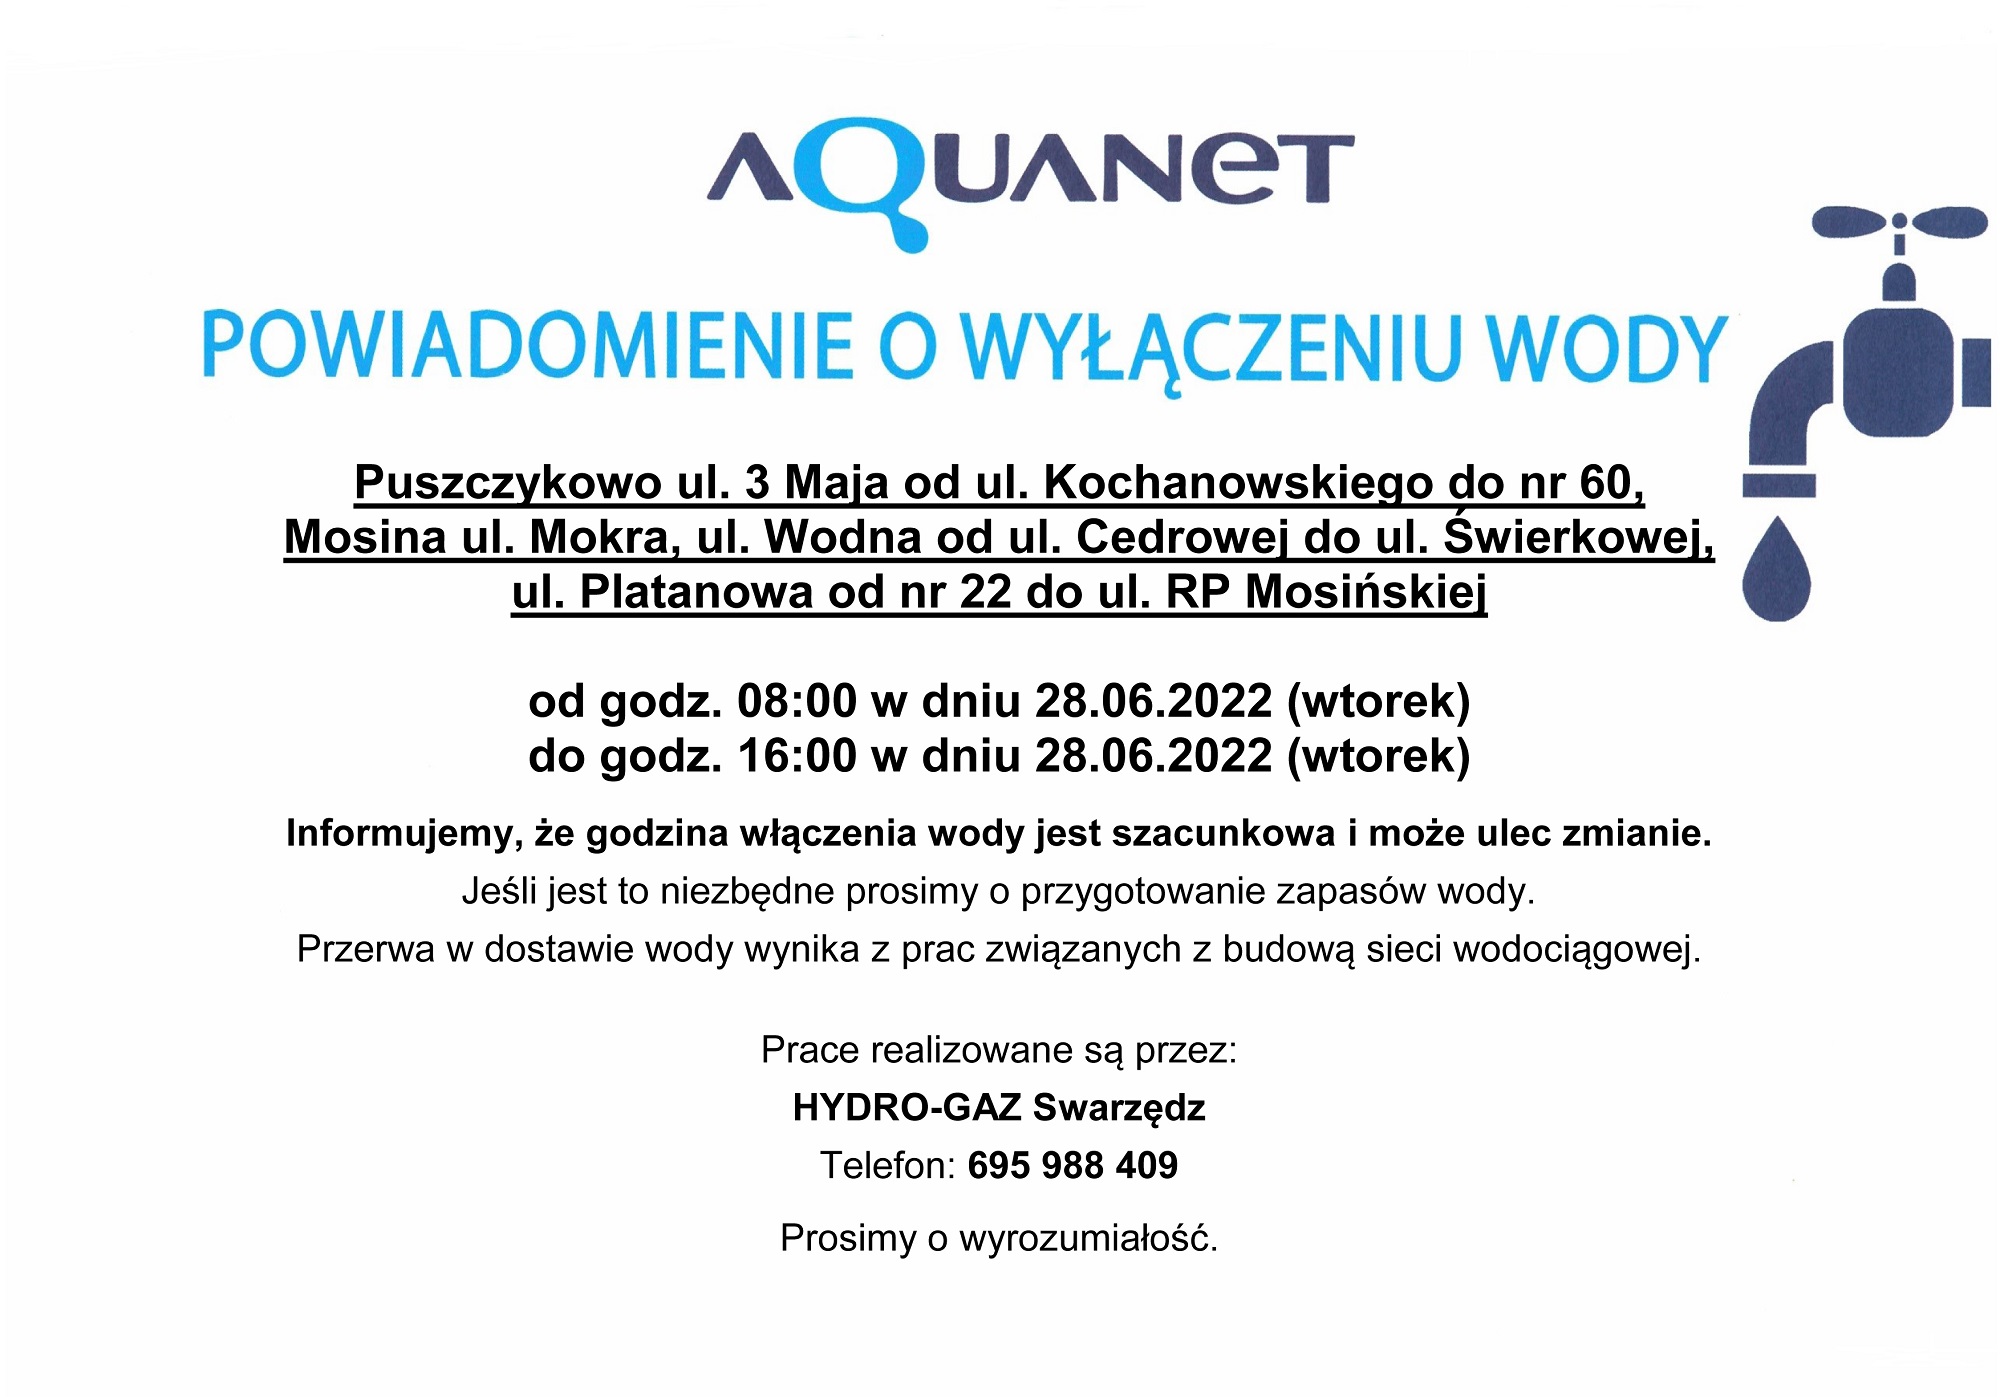 Aquanet informuje o wyłączeniu wody w dniu 28 czerwca br. w godzinach od 8:00 do 16:00.